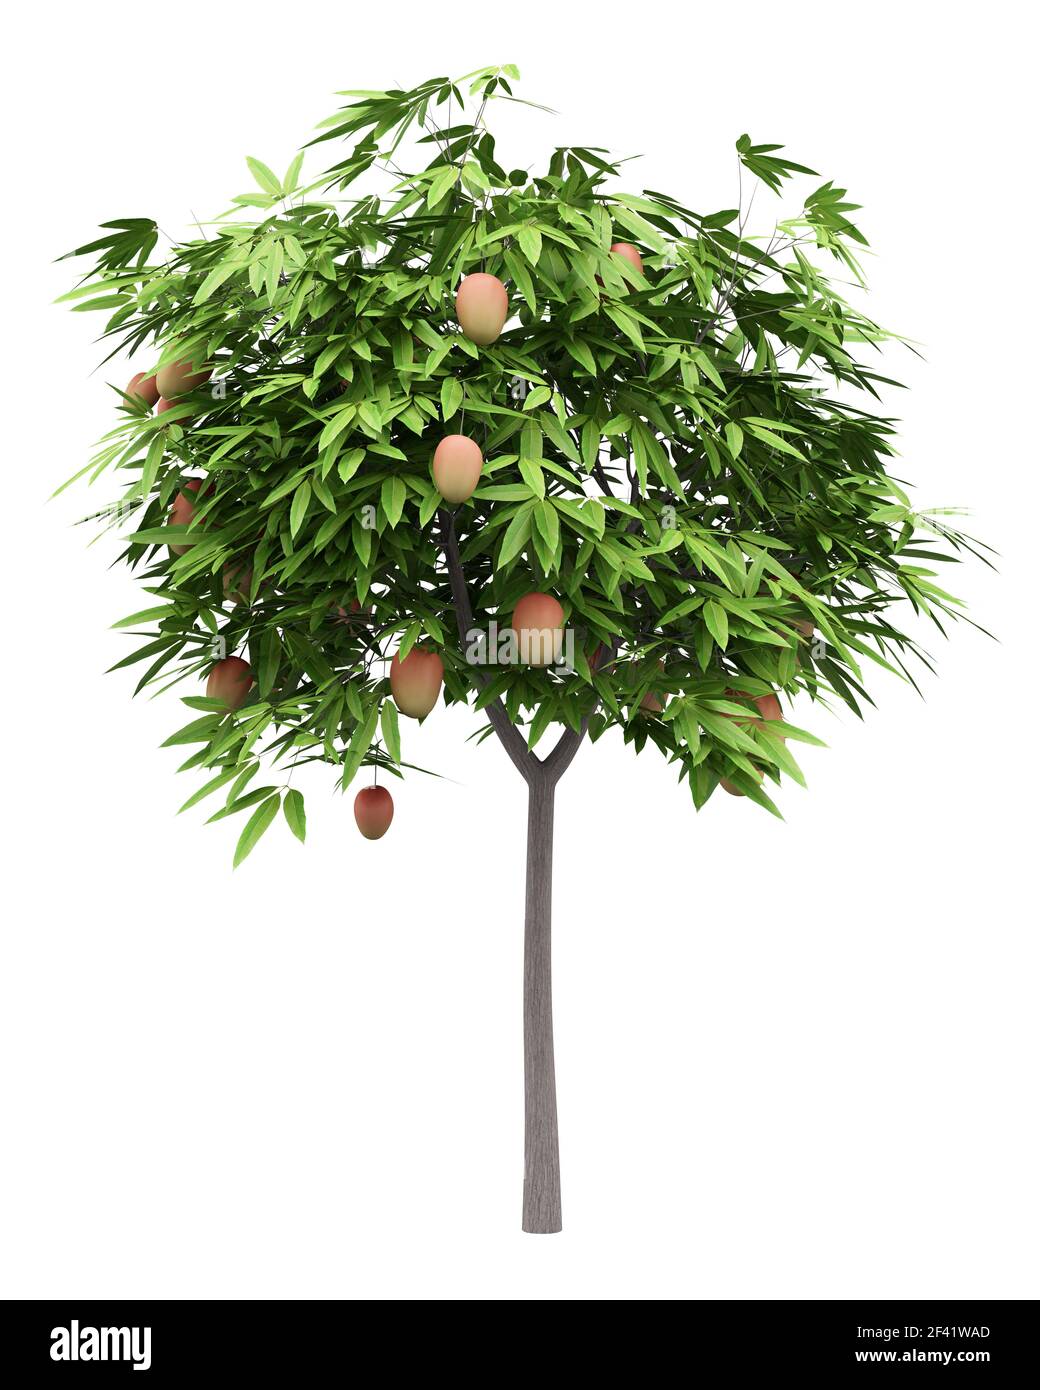 mango tree with mango fruits isolated on white background. 3d illustration Stock Photo